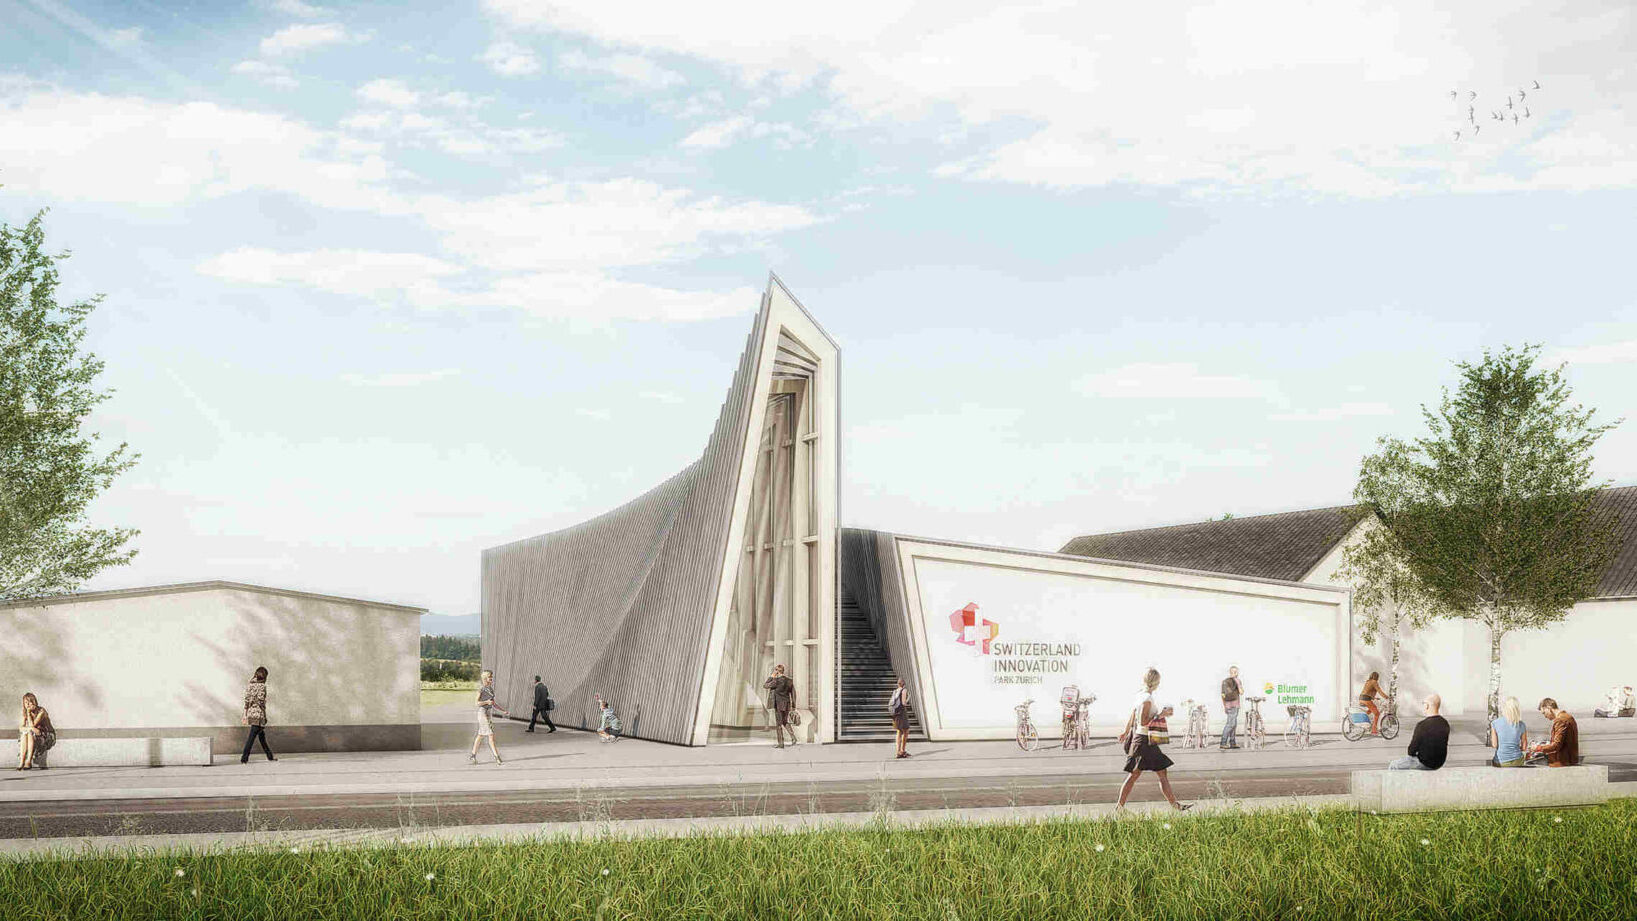 Швейцарський інноваційний парк Цюріха: вхід до павільйону